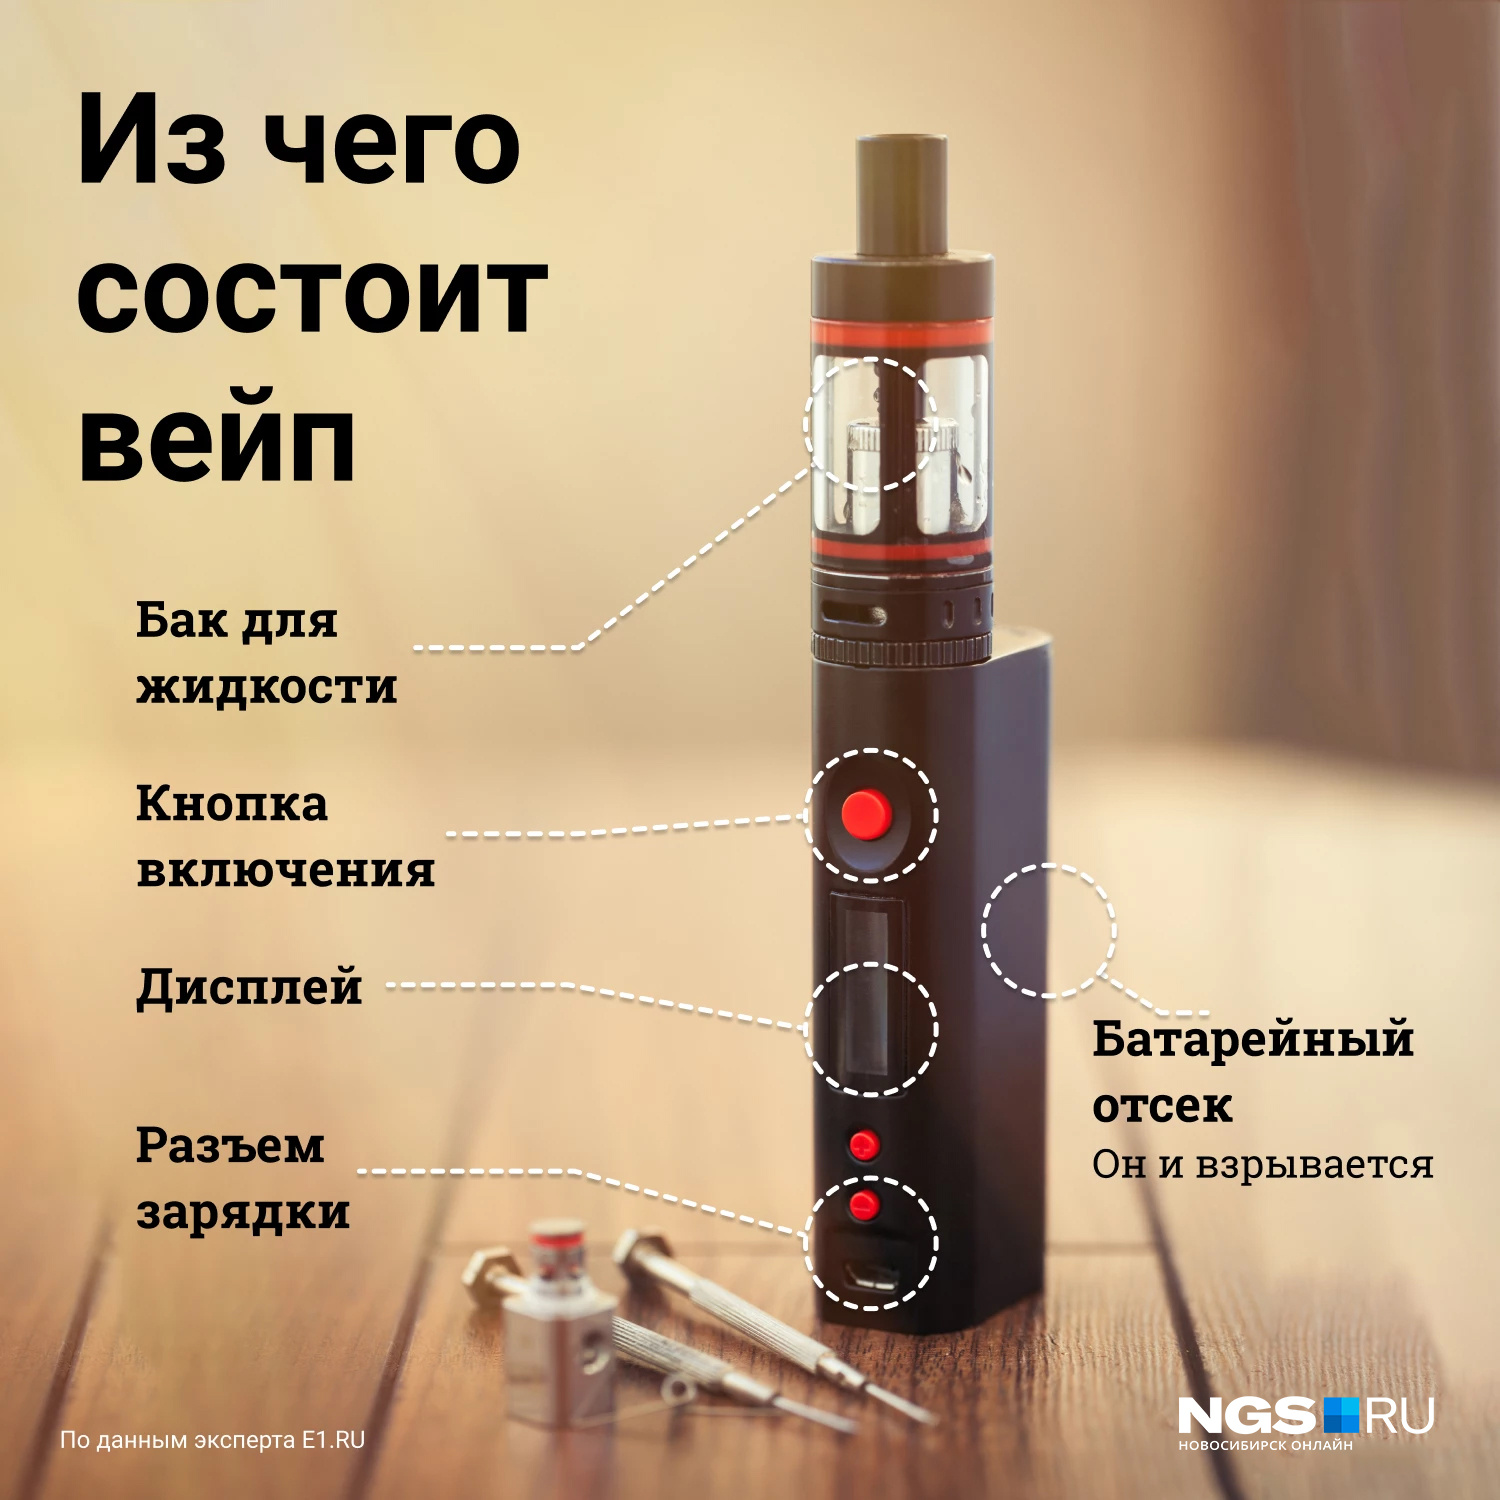 Отравление вейпами и электронными сигаретами среди подростков, вредные  вещества в вейпах, есть ли никотин в вейпах и электронных сигаретах, какие  заболевания вызывает вейпинг, март 2022 год - 9 марта 2022 - v1.ru